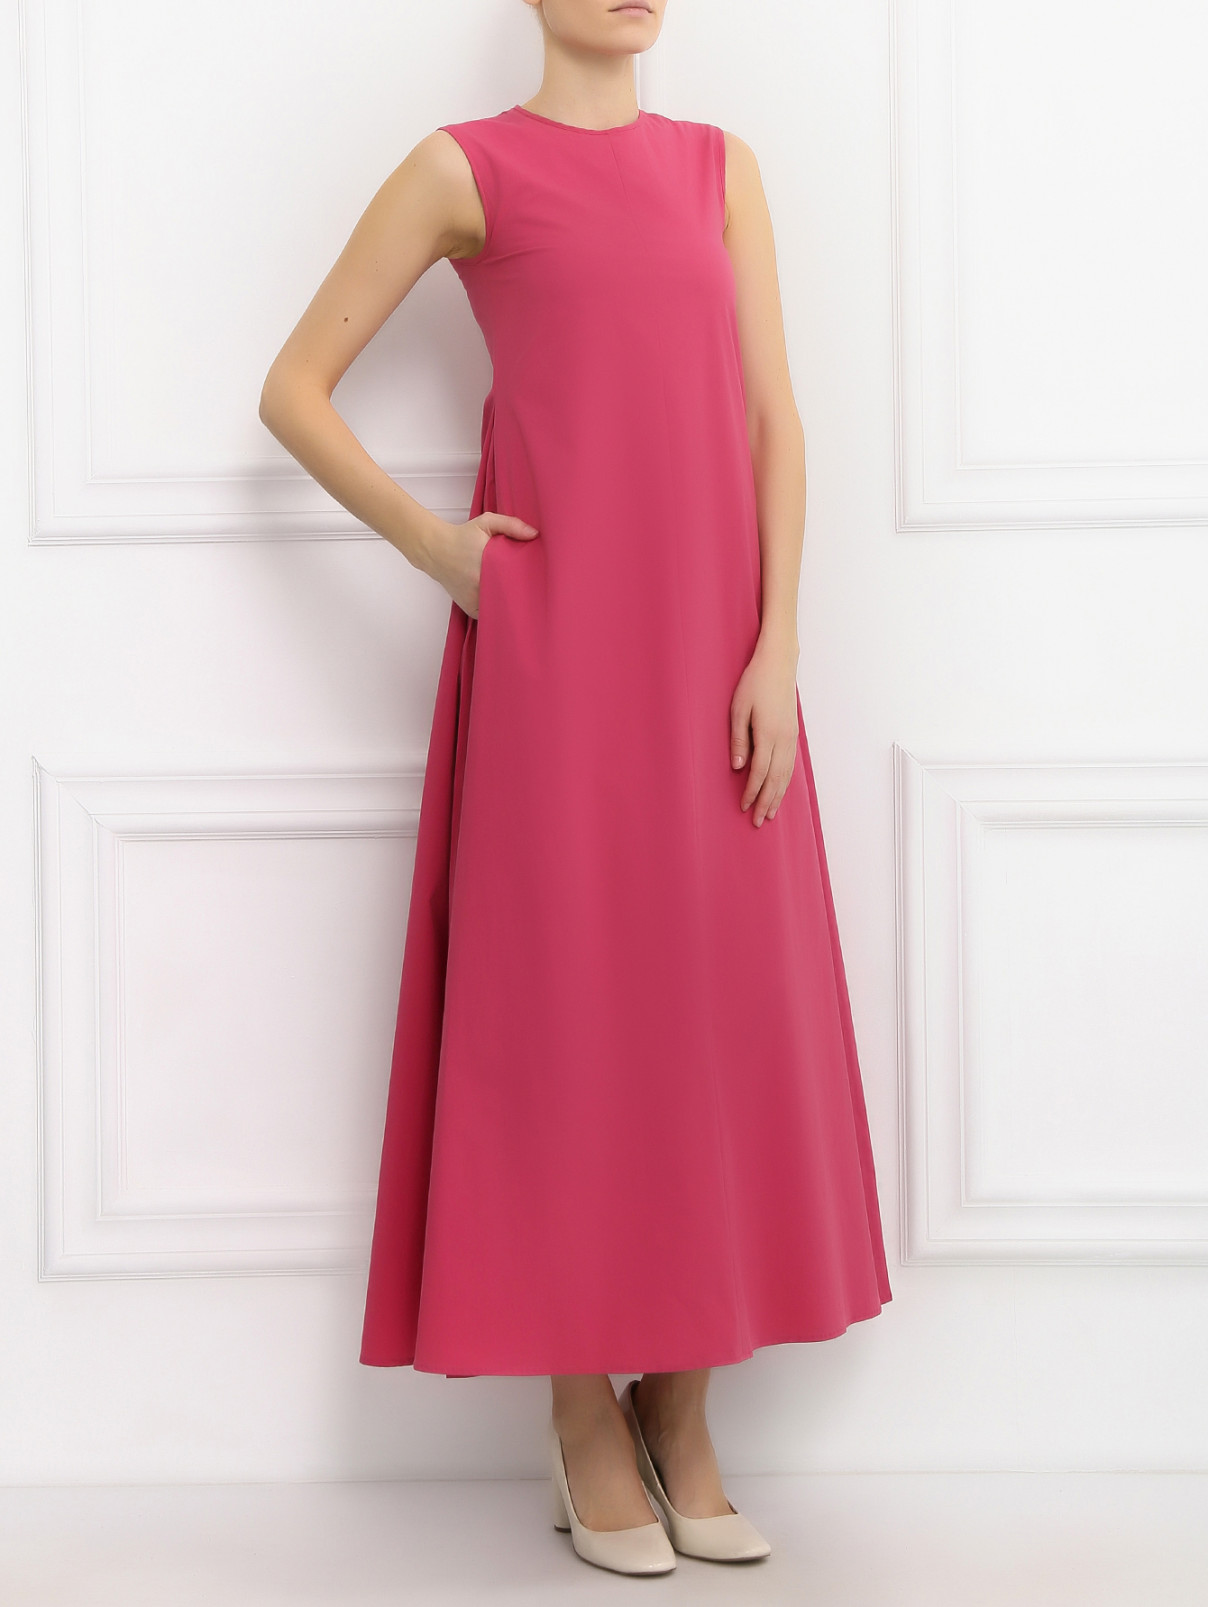 Платье-макси из хлопка без рукавов S Max Mara  –  Модель Общий вид  – Цвет:  Розовый